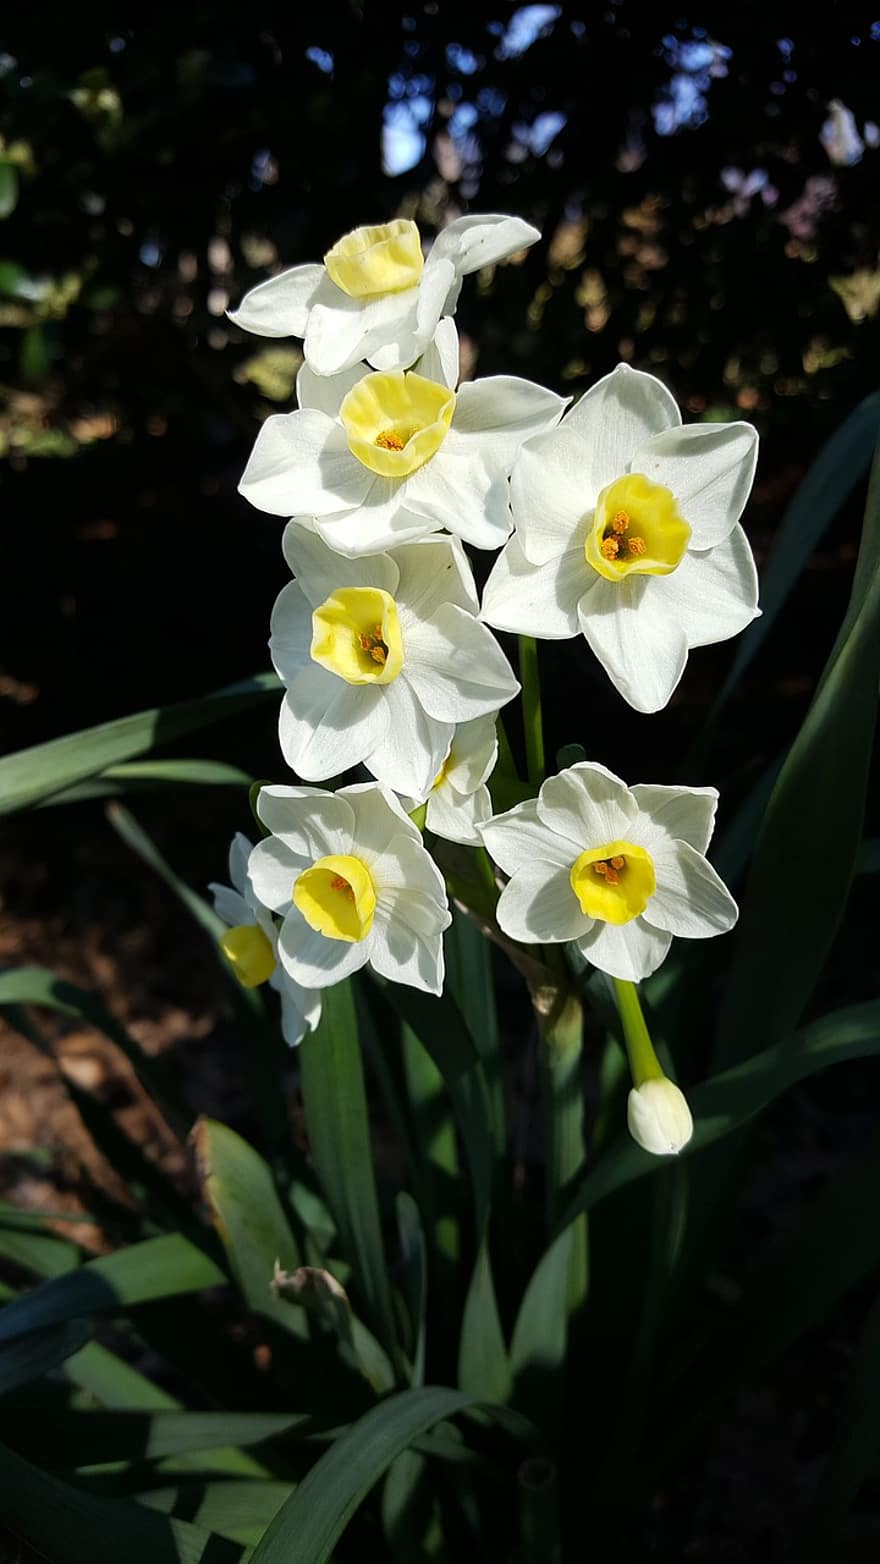 påskeliljer, blomster, anlegg, Narcissus, hvite blomster, petals, knopp, blomst, blader, vår, natur